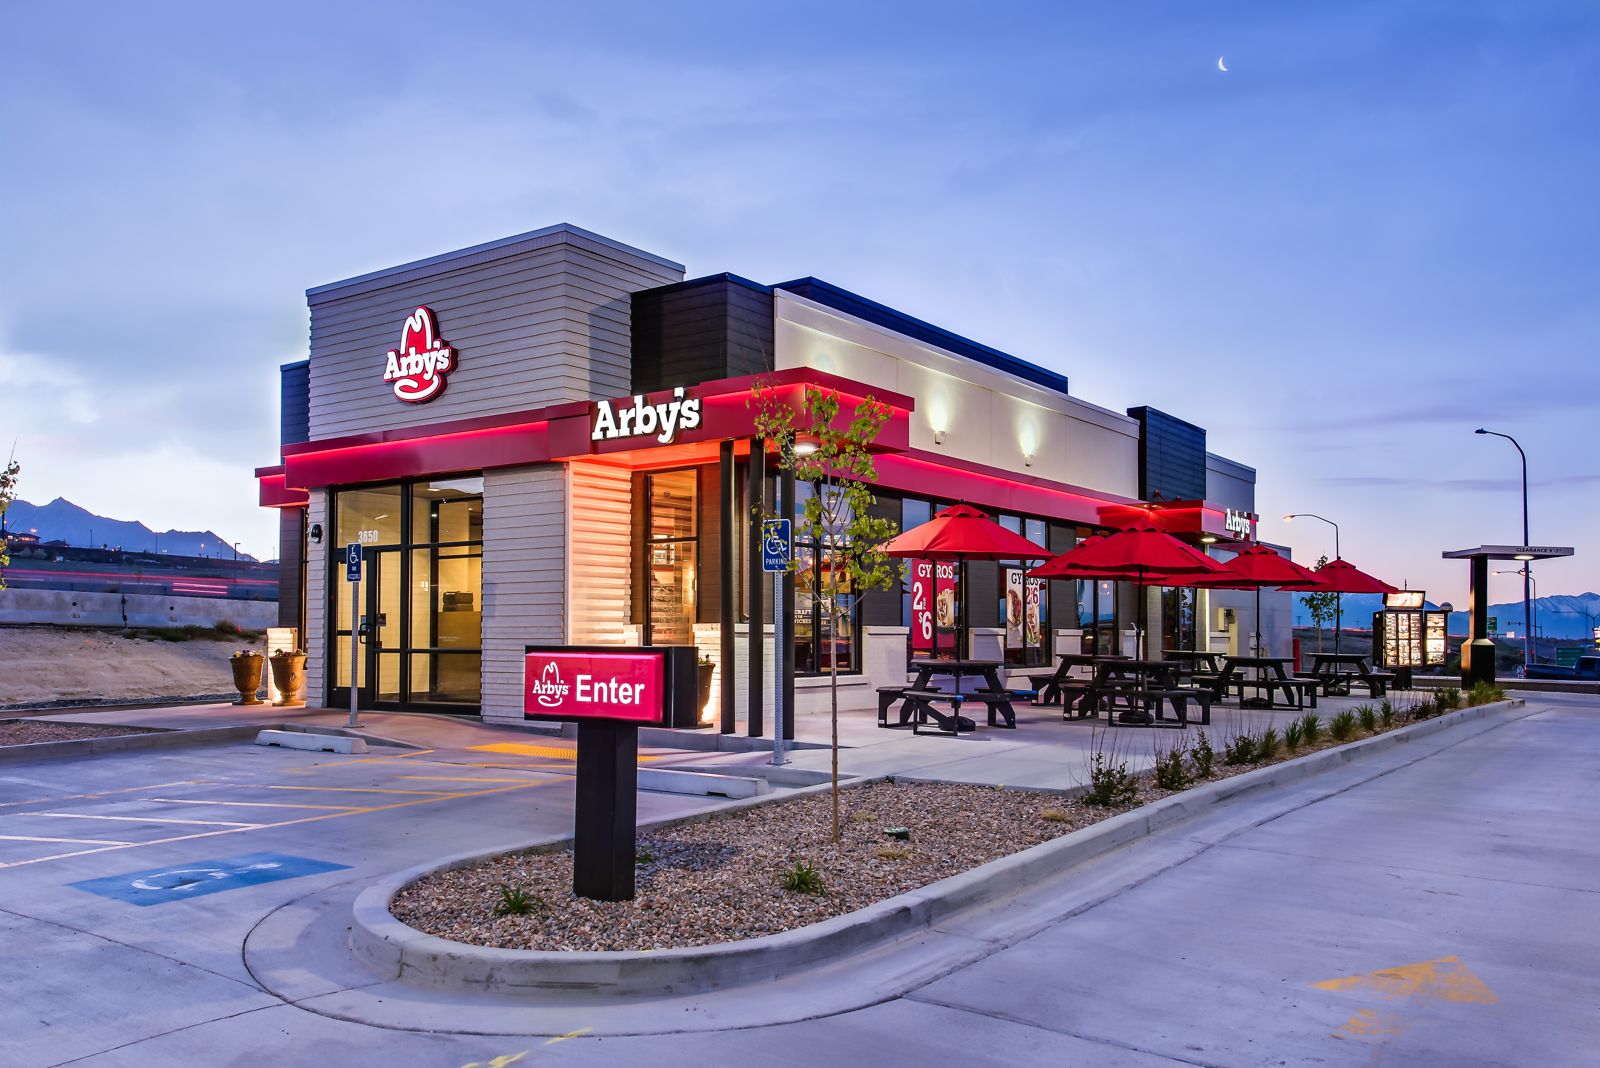 مطاعم «آربيز» الأمريكية الشهيرة تستعد للانطلاقة في المملكة بافتتاح أول مطعم بالرياض نهاية 2022